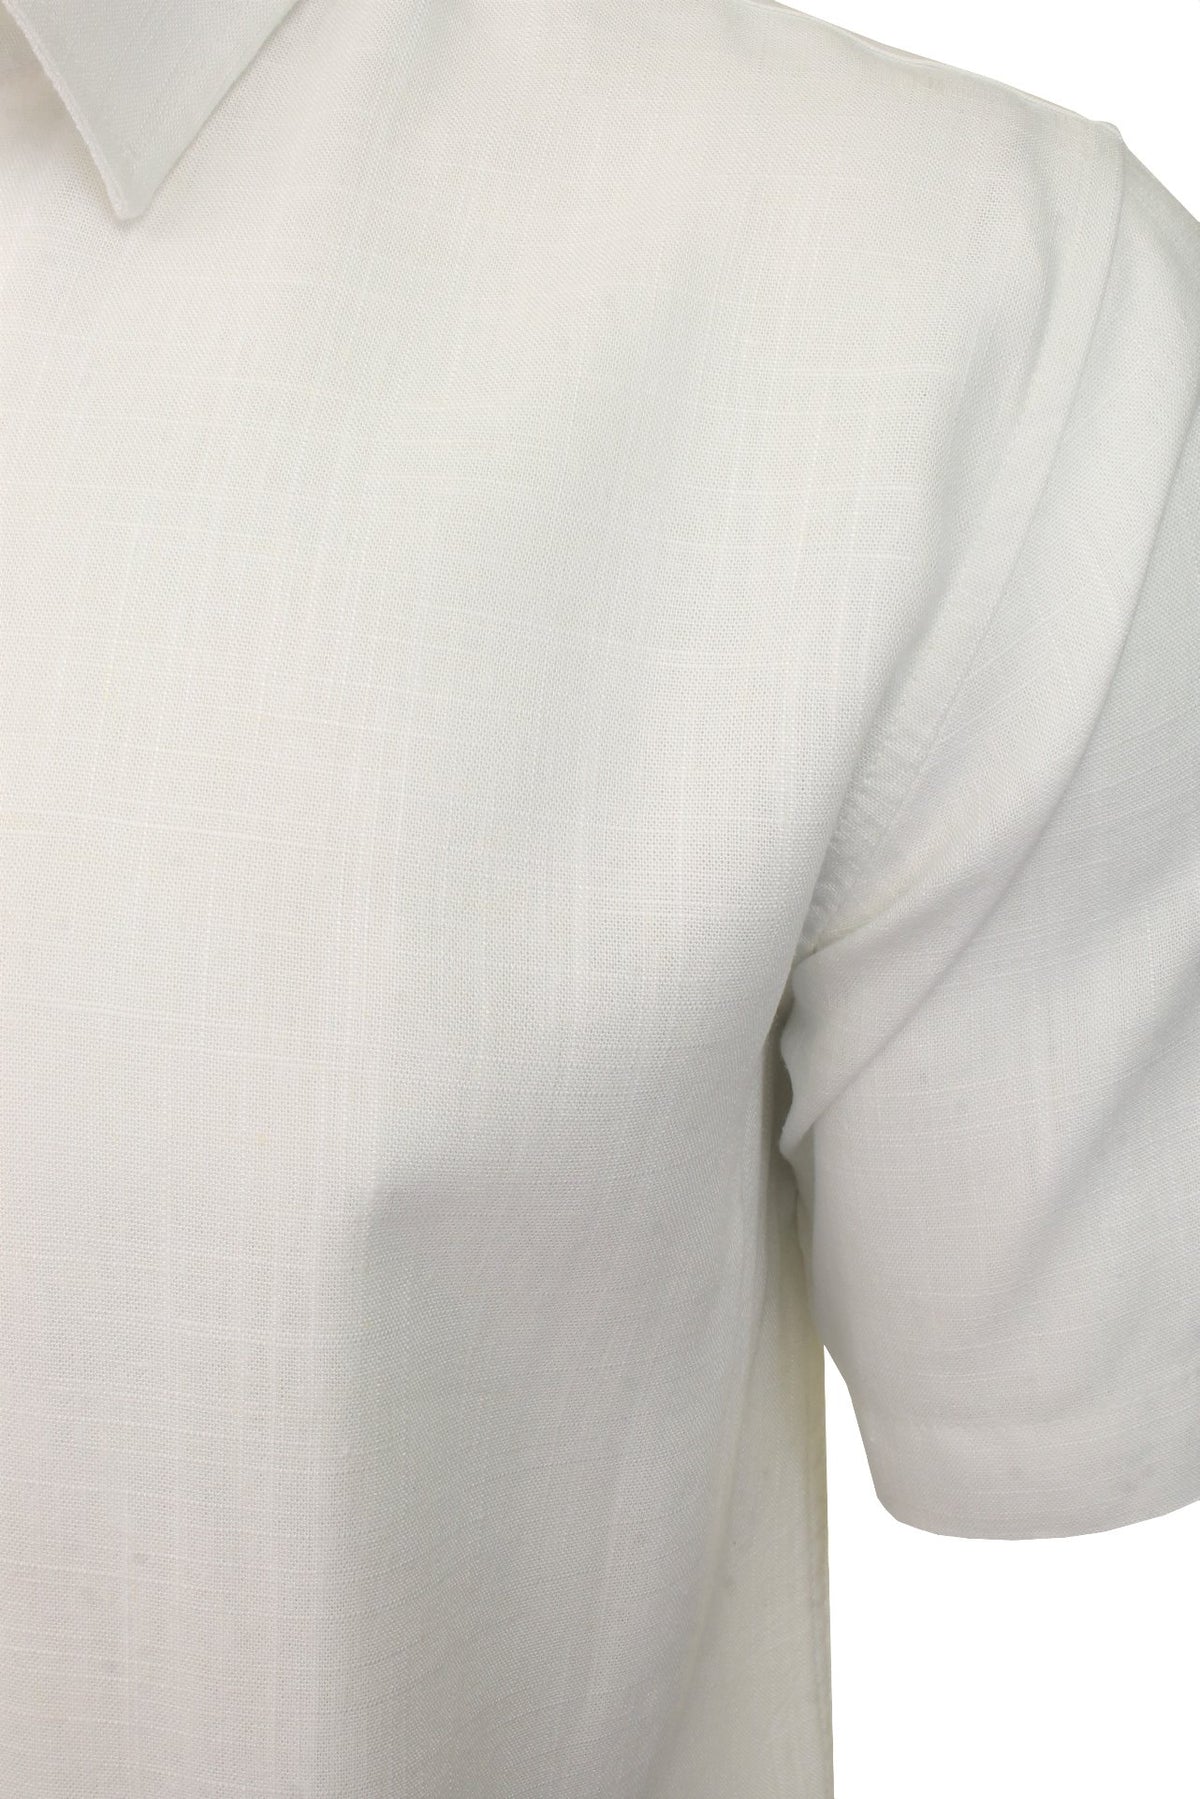 Brave Soul Mens Linen Shirt 'ESK' - Short Sleeved, 02, Msh-508Esk, Optic White